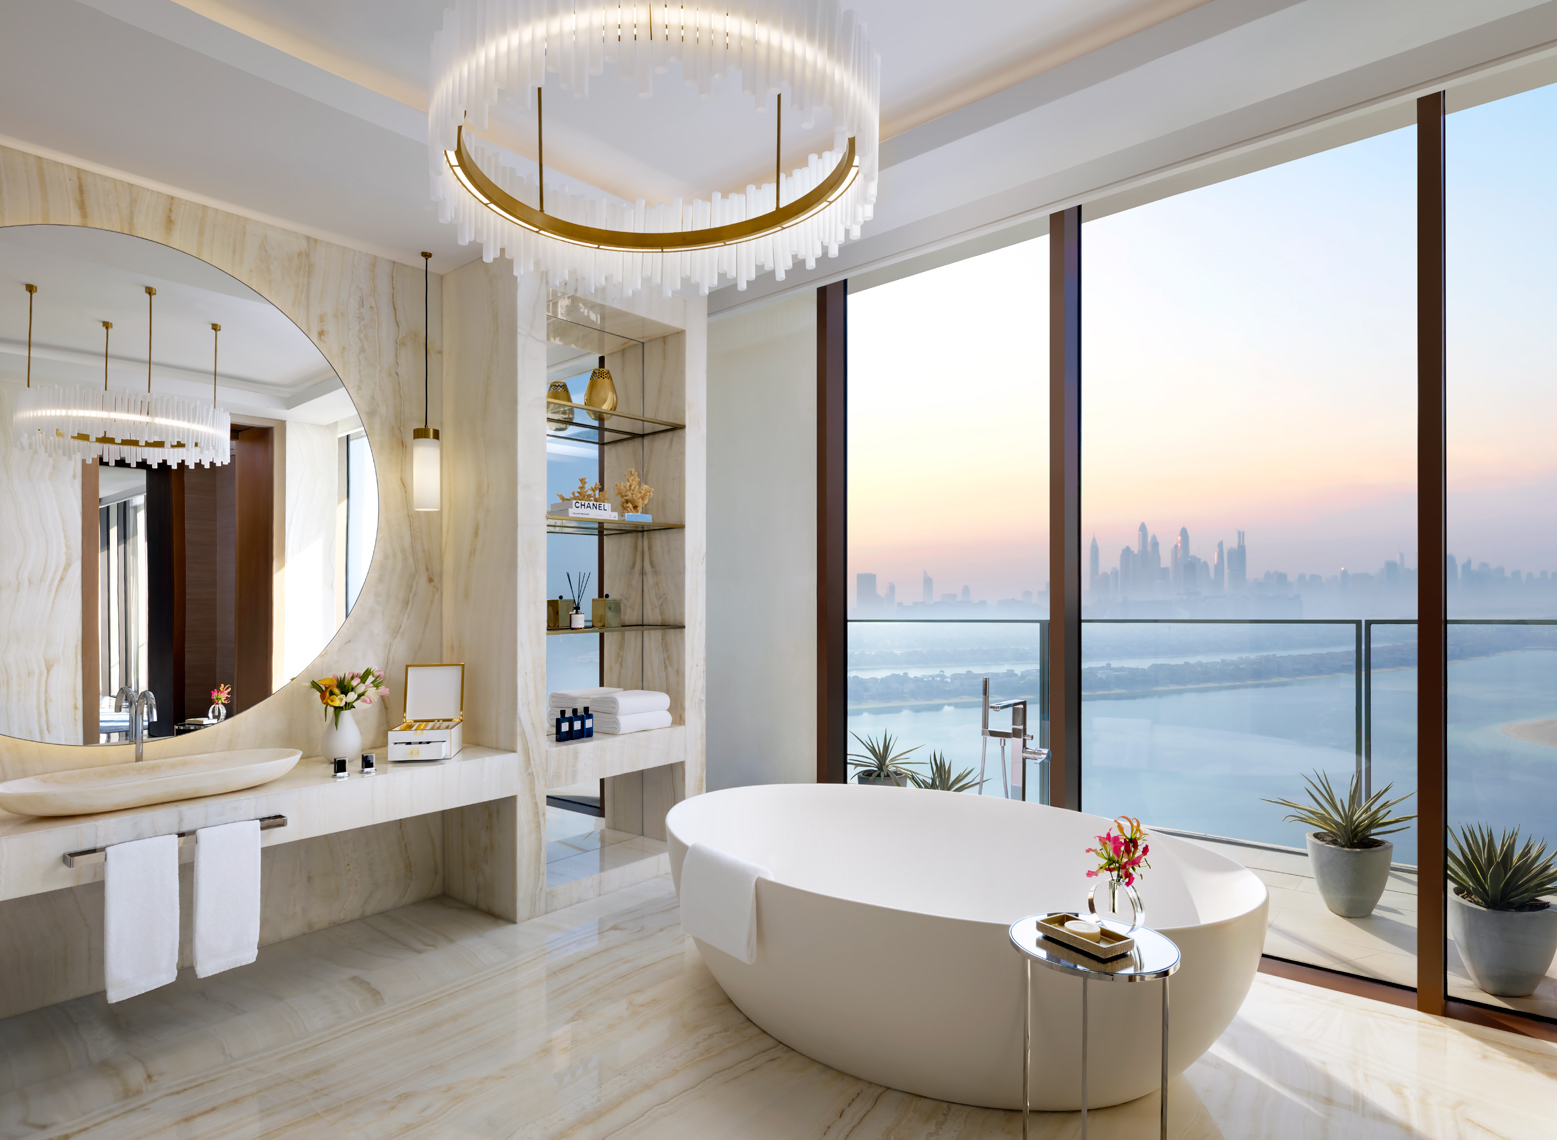 Atlantis_The_Royal_Bathroom_Palm_View